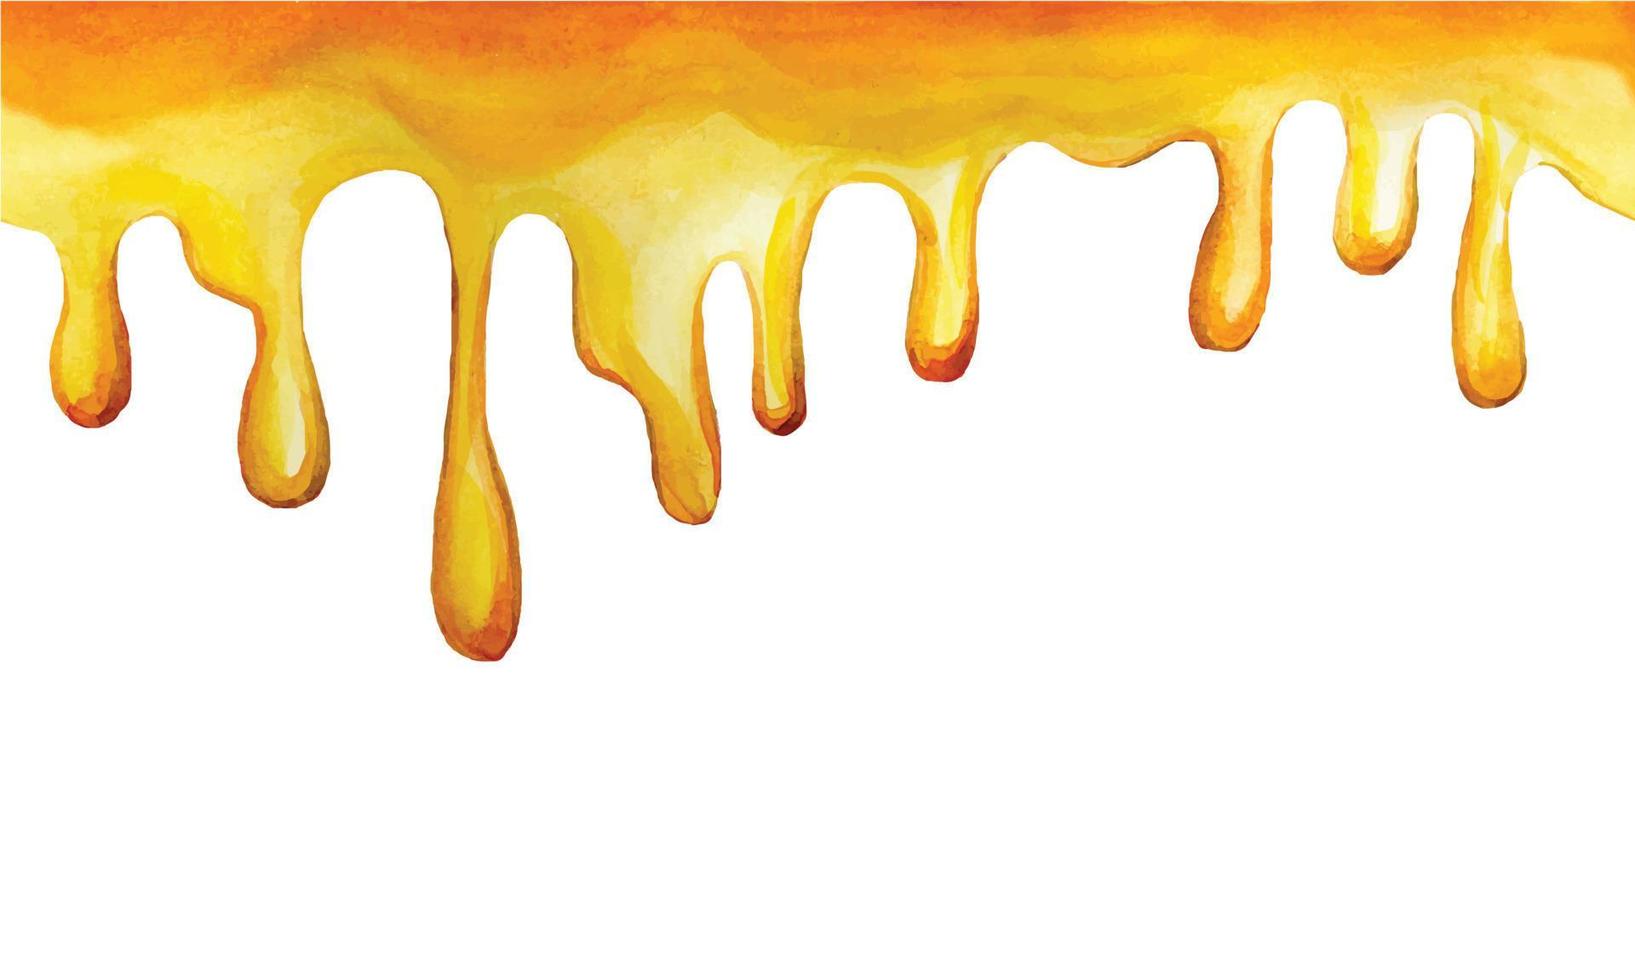 naadloze randdruppels van gele honing. aquarel tekenen, frame, grens met gele honing druipende druppels. print, webbanner voor landbouw, bijenteelt, zoet voedsel vector